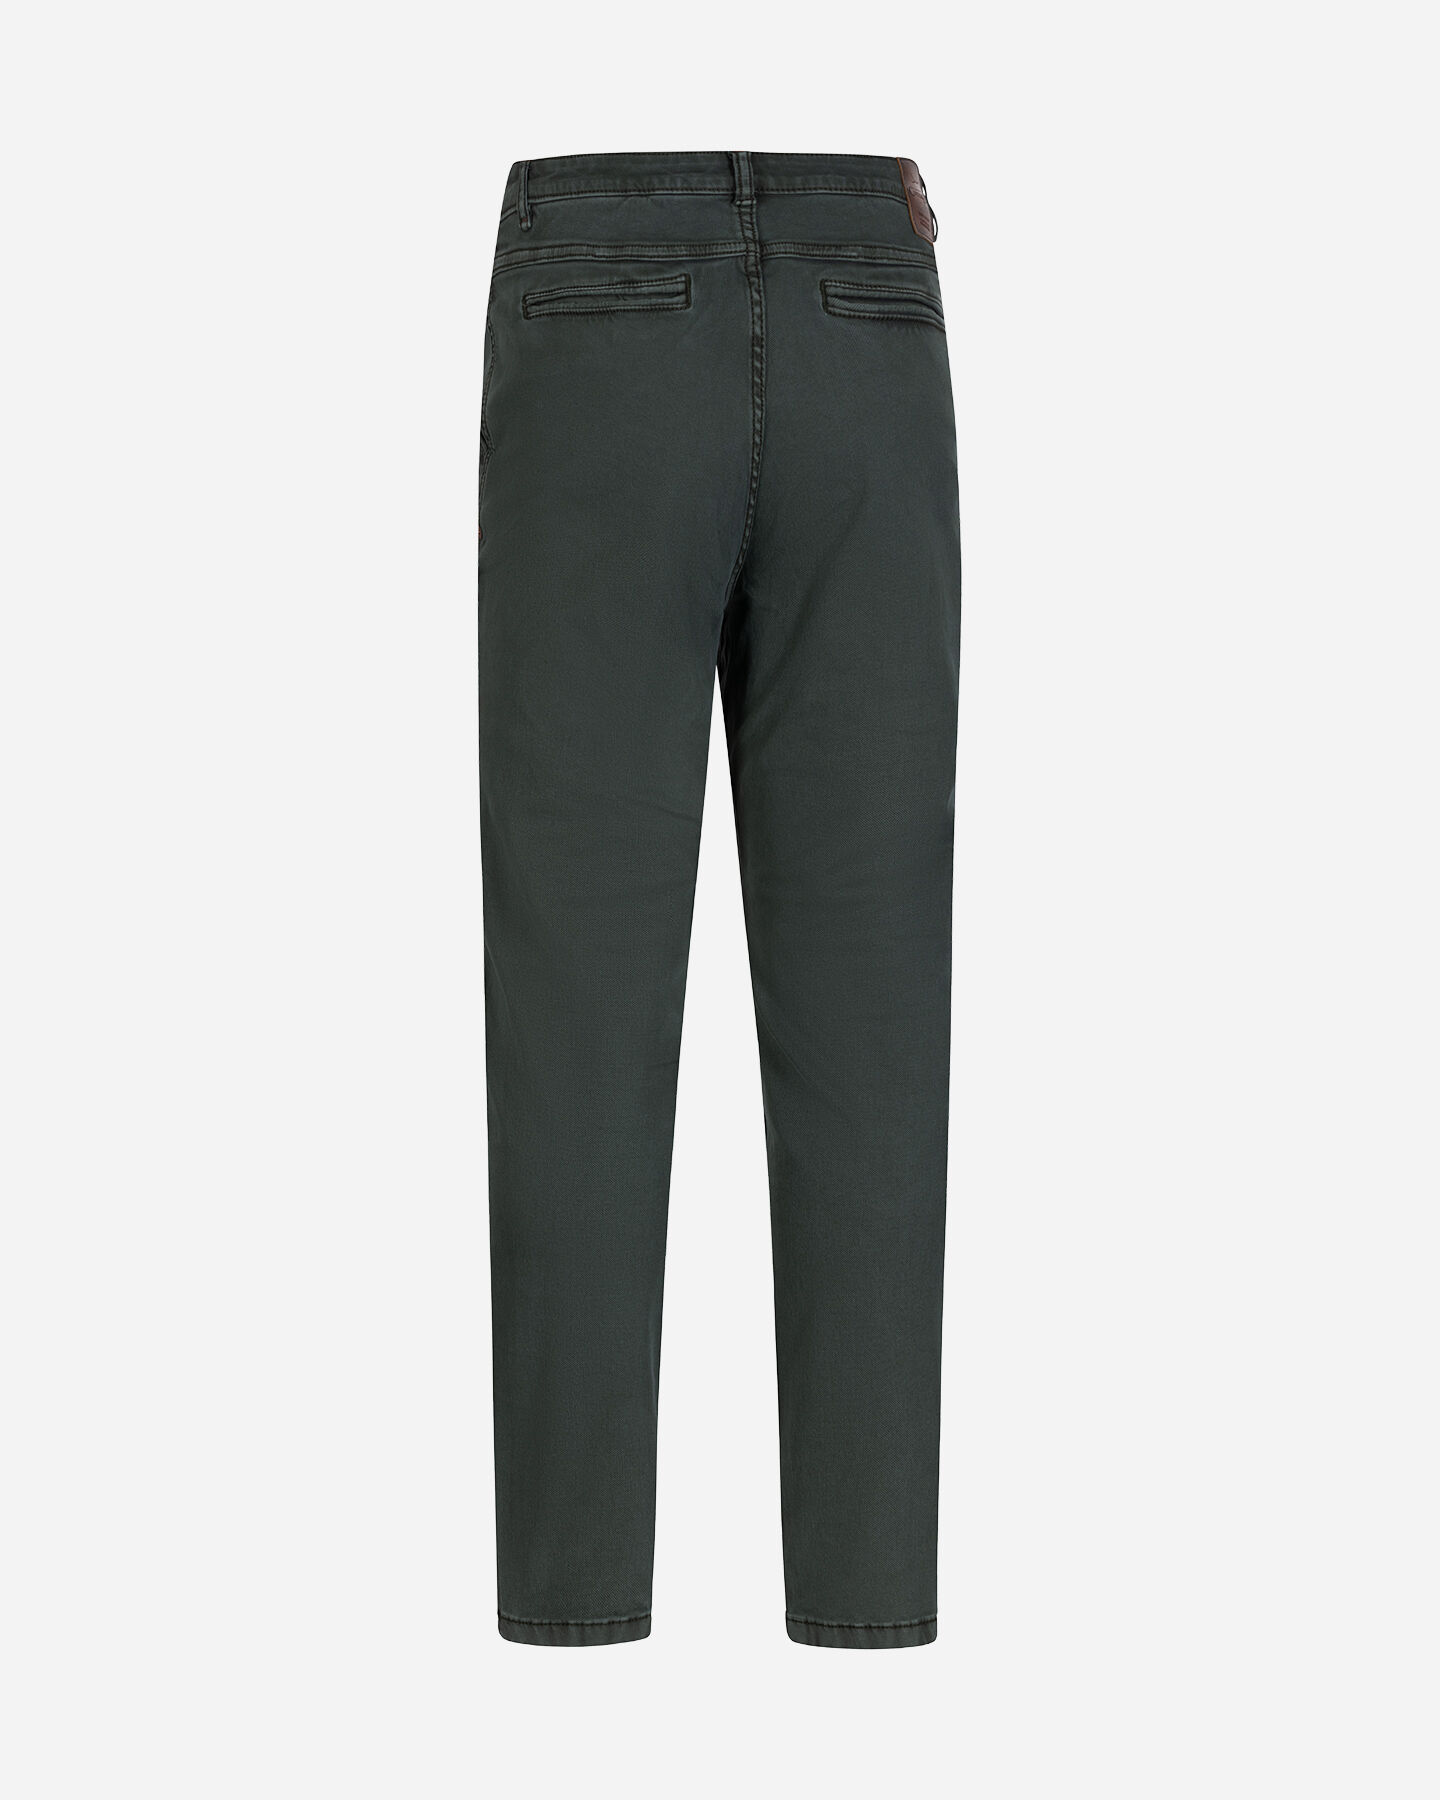  Pantalone COTTON BELT CHINO HYBRID M S4127003|043A|30 scatto 5